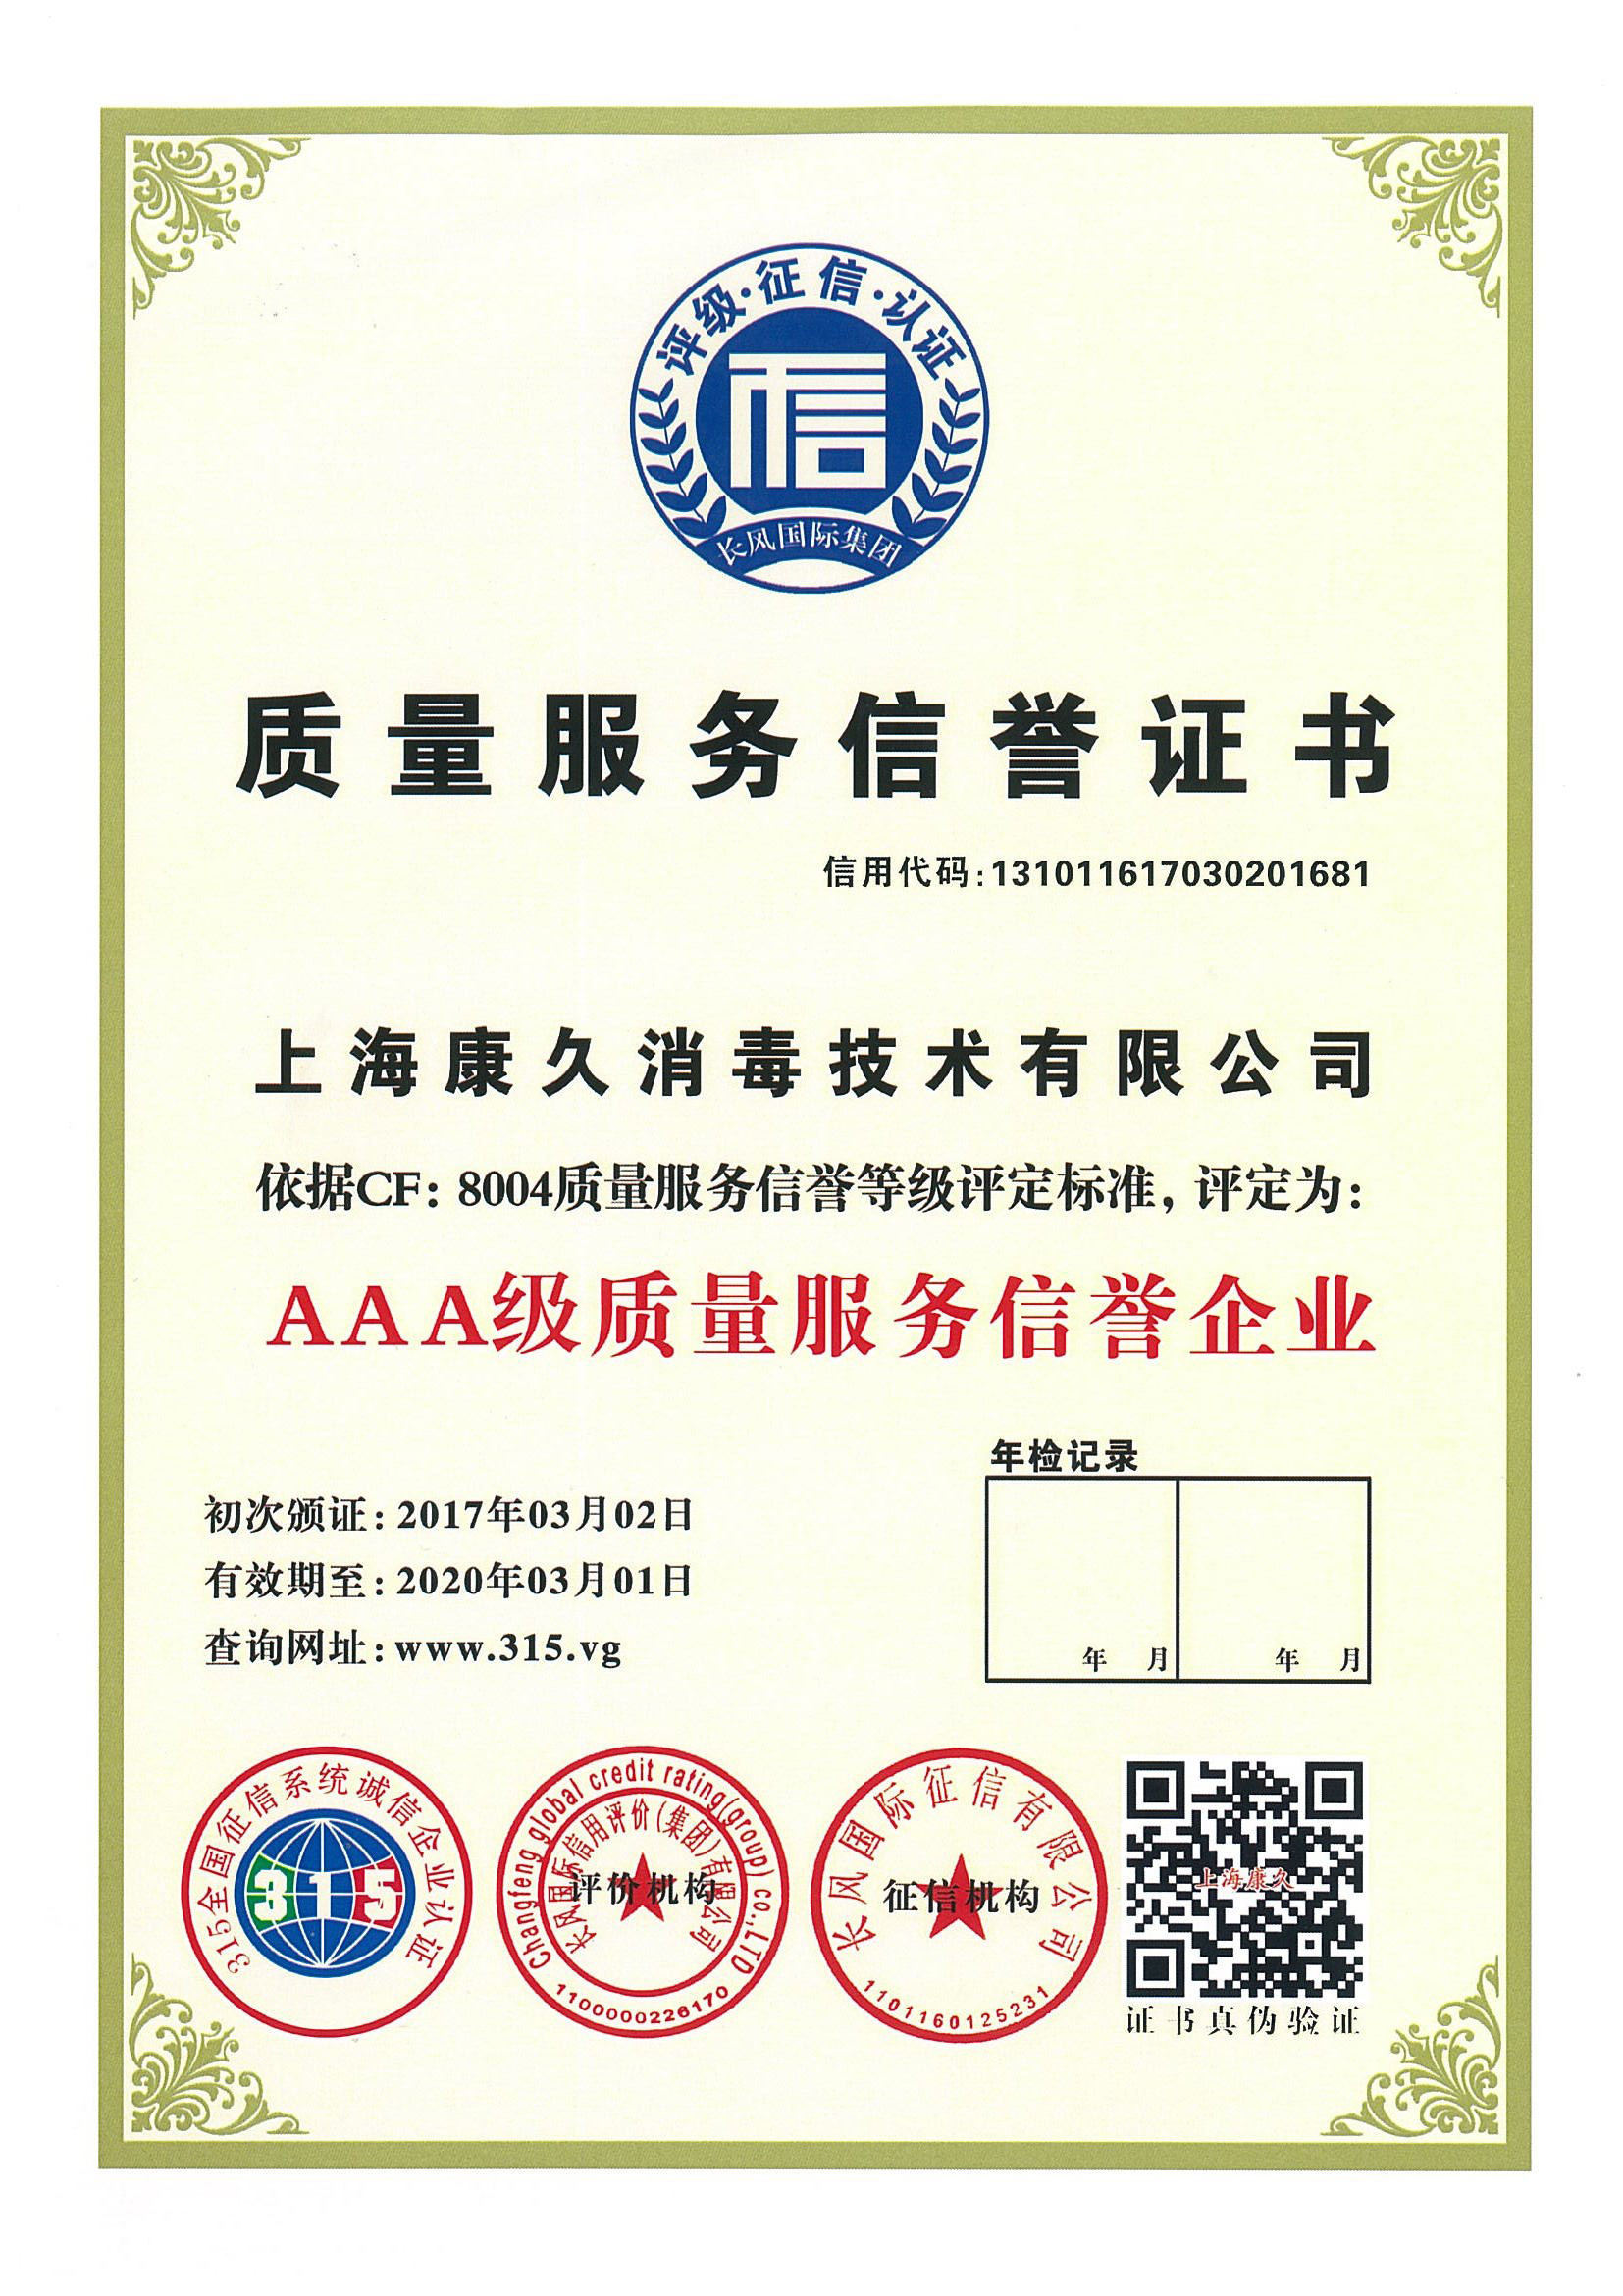 “苏州质量服务信誉证书